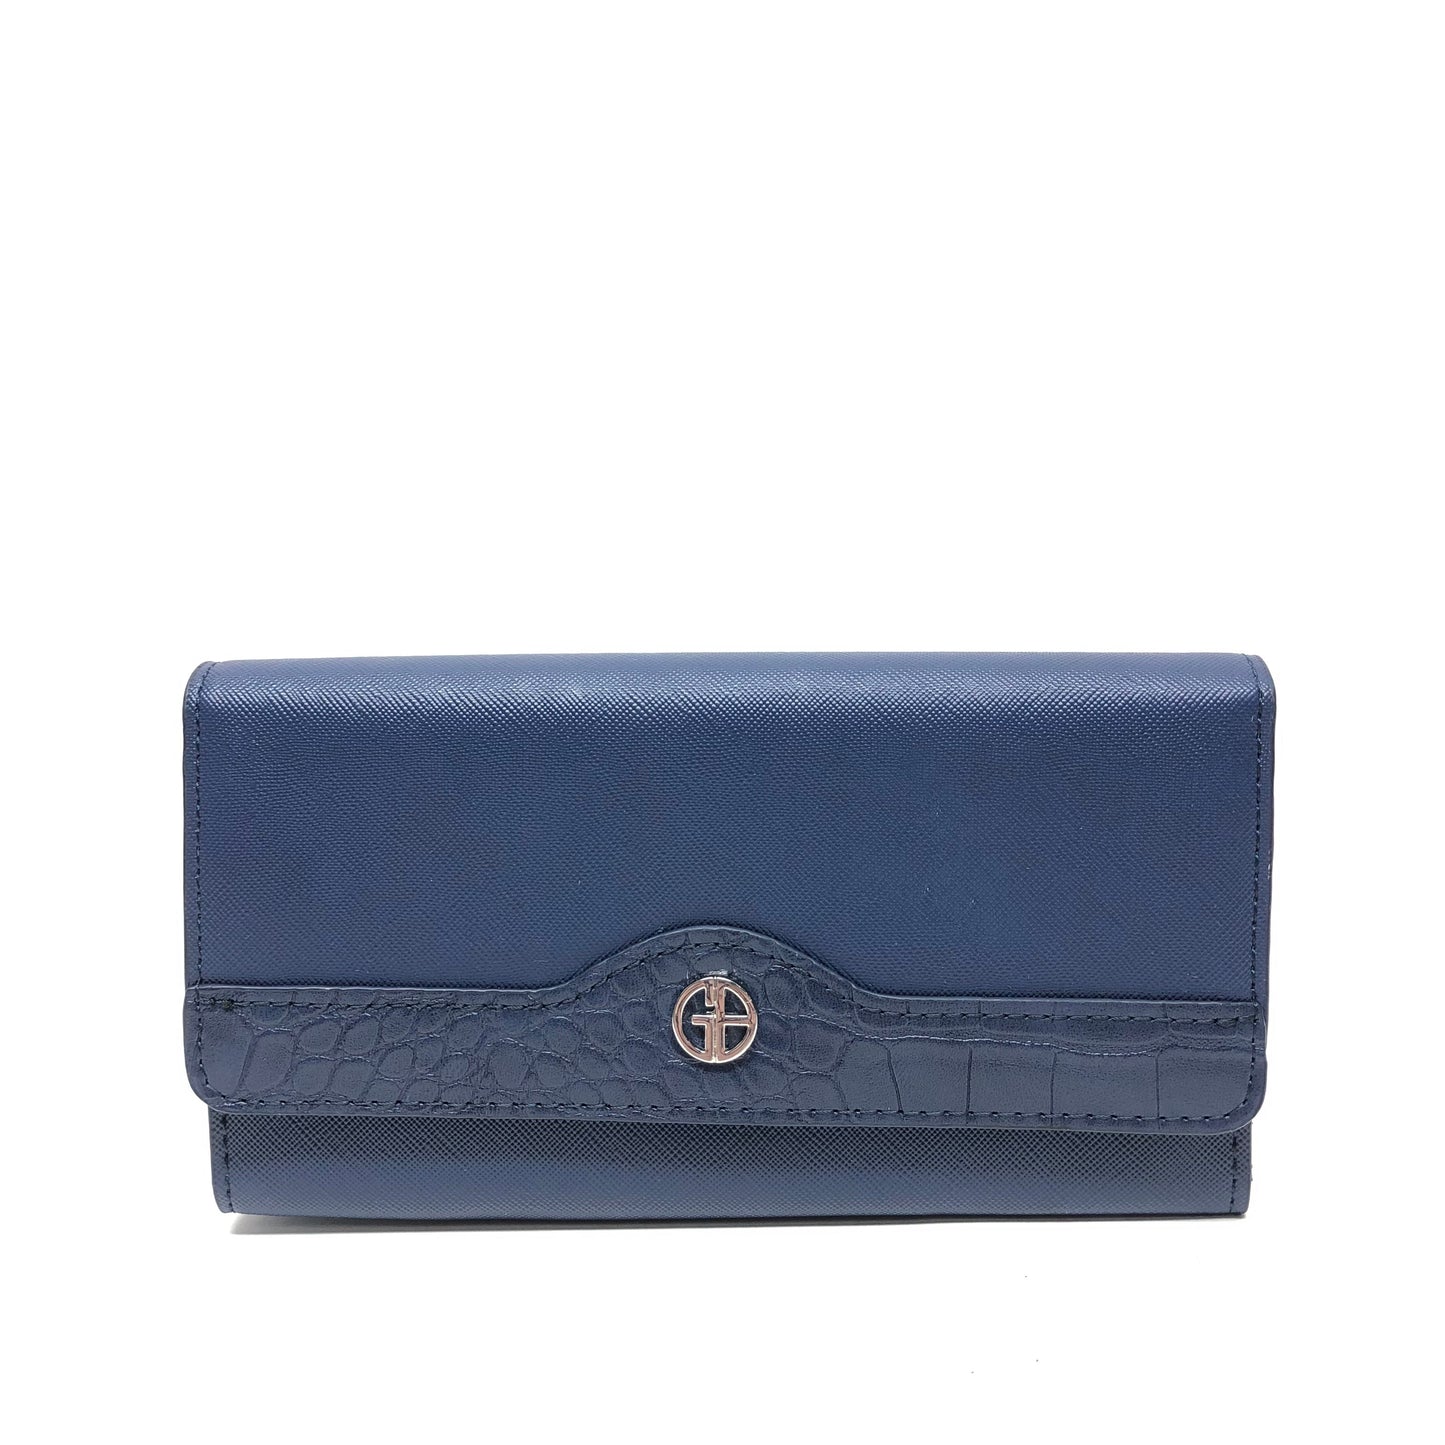 Wallet By Giani Bernini  Size: Small